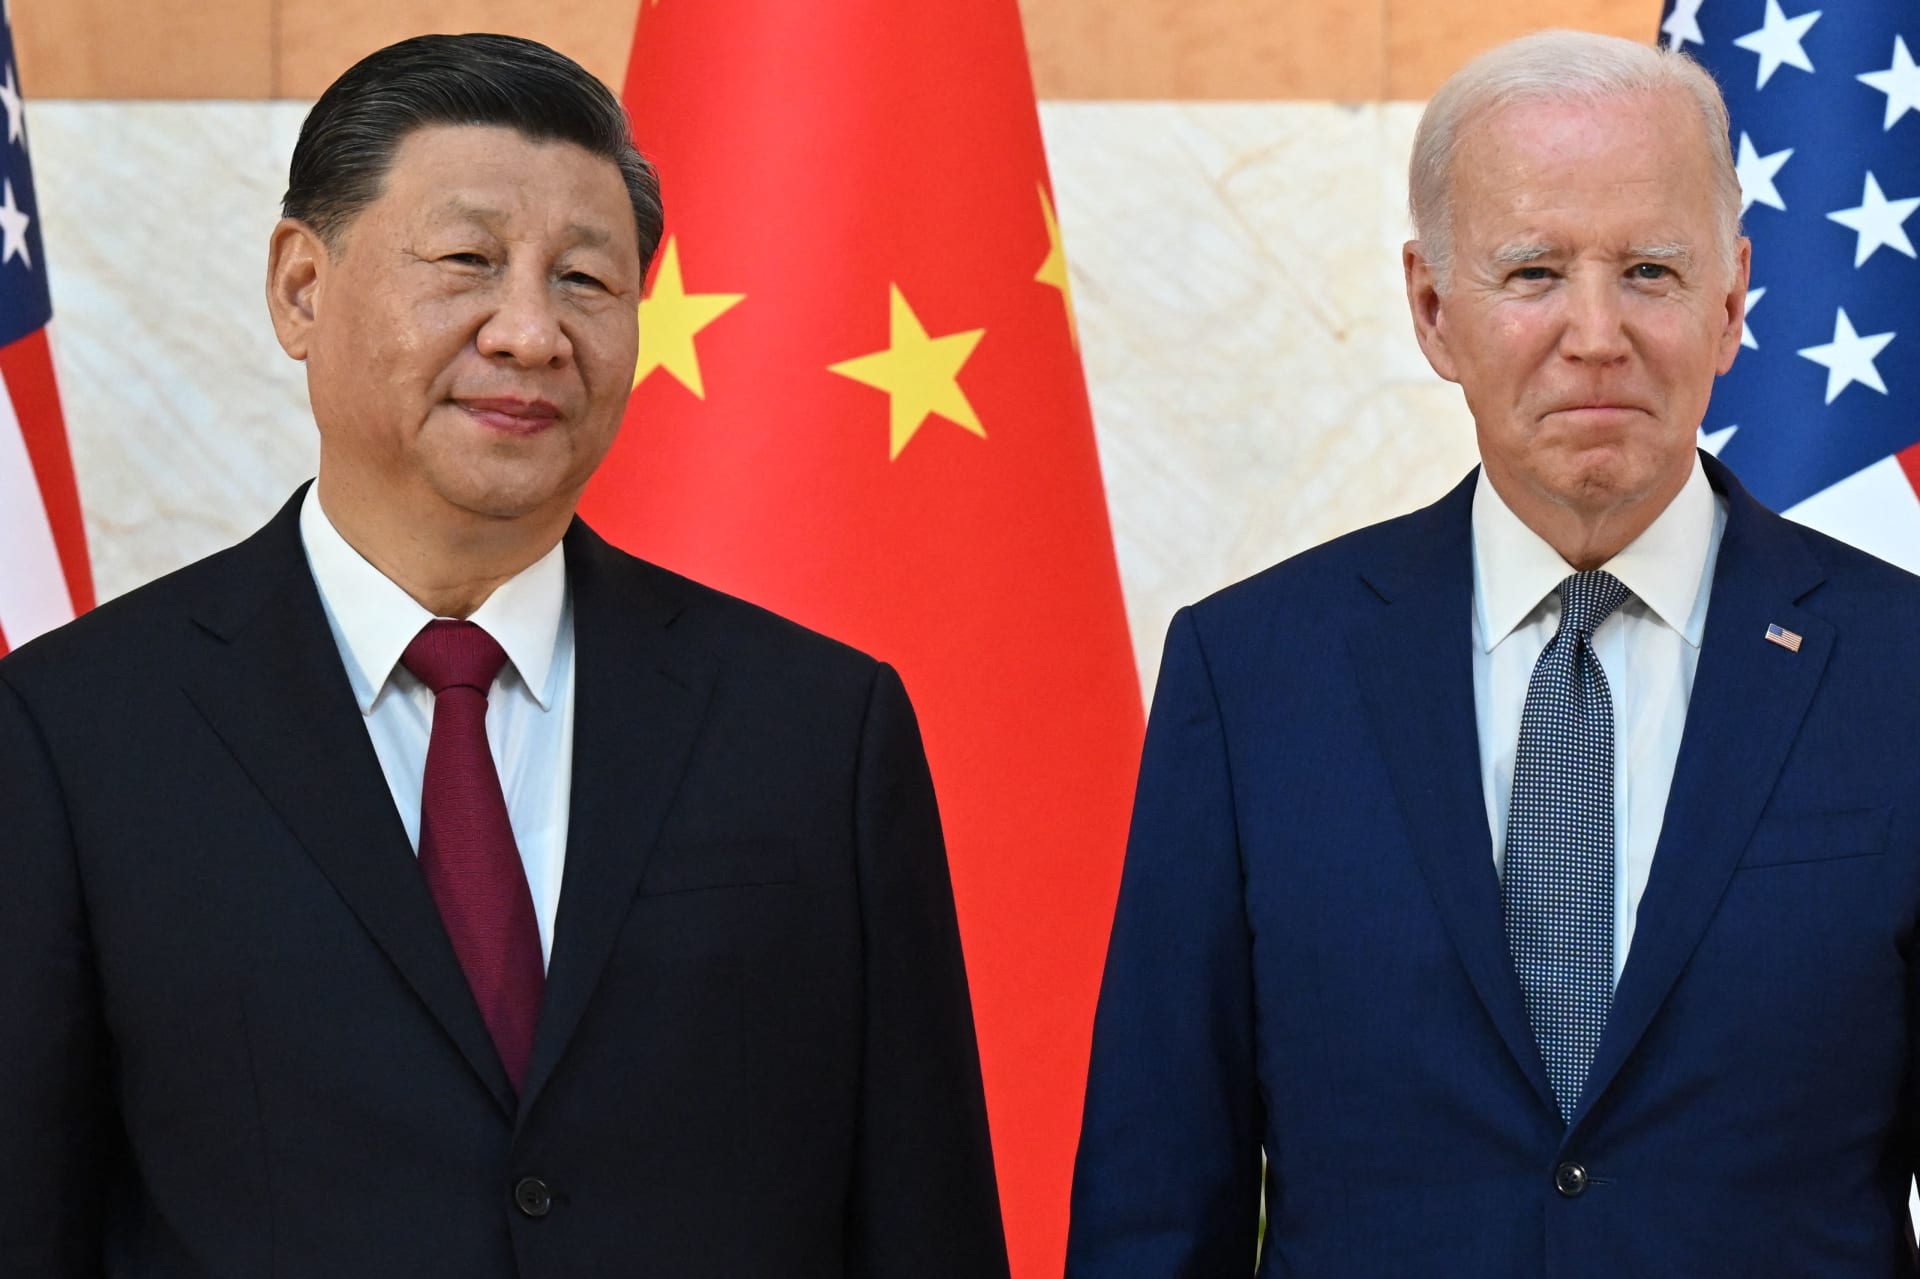 أمريكا: وصف بايدن لرئيس الصين بـ"الديكتاتور"لا ينبغي أن يكون مفاجئا